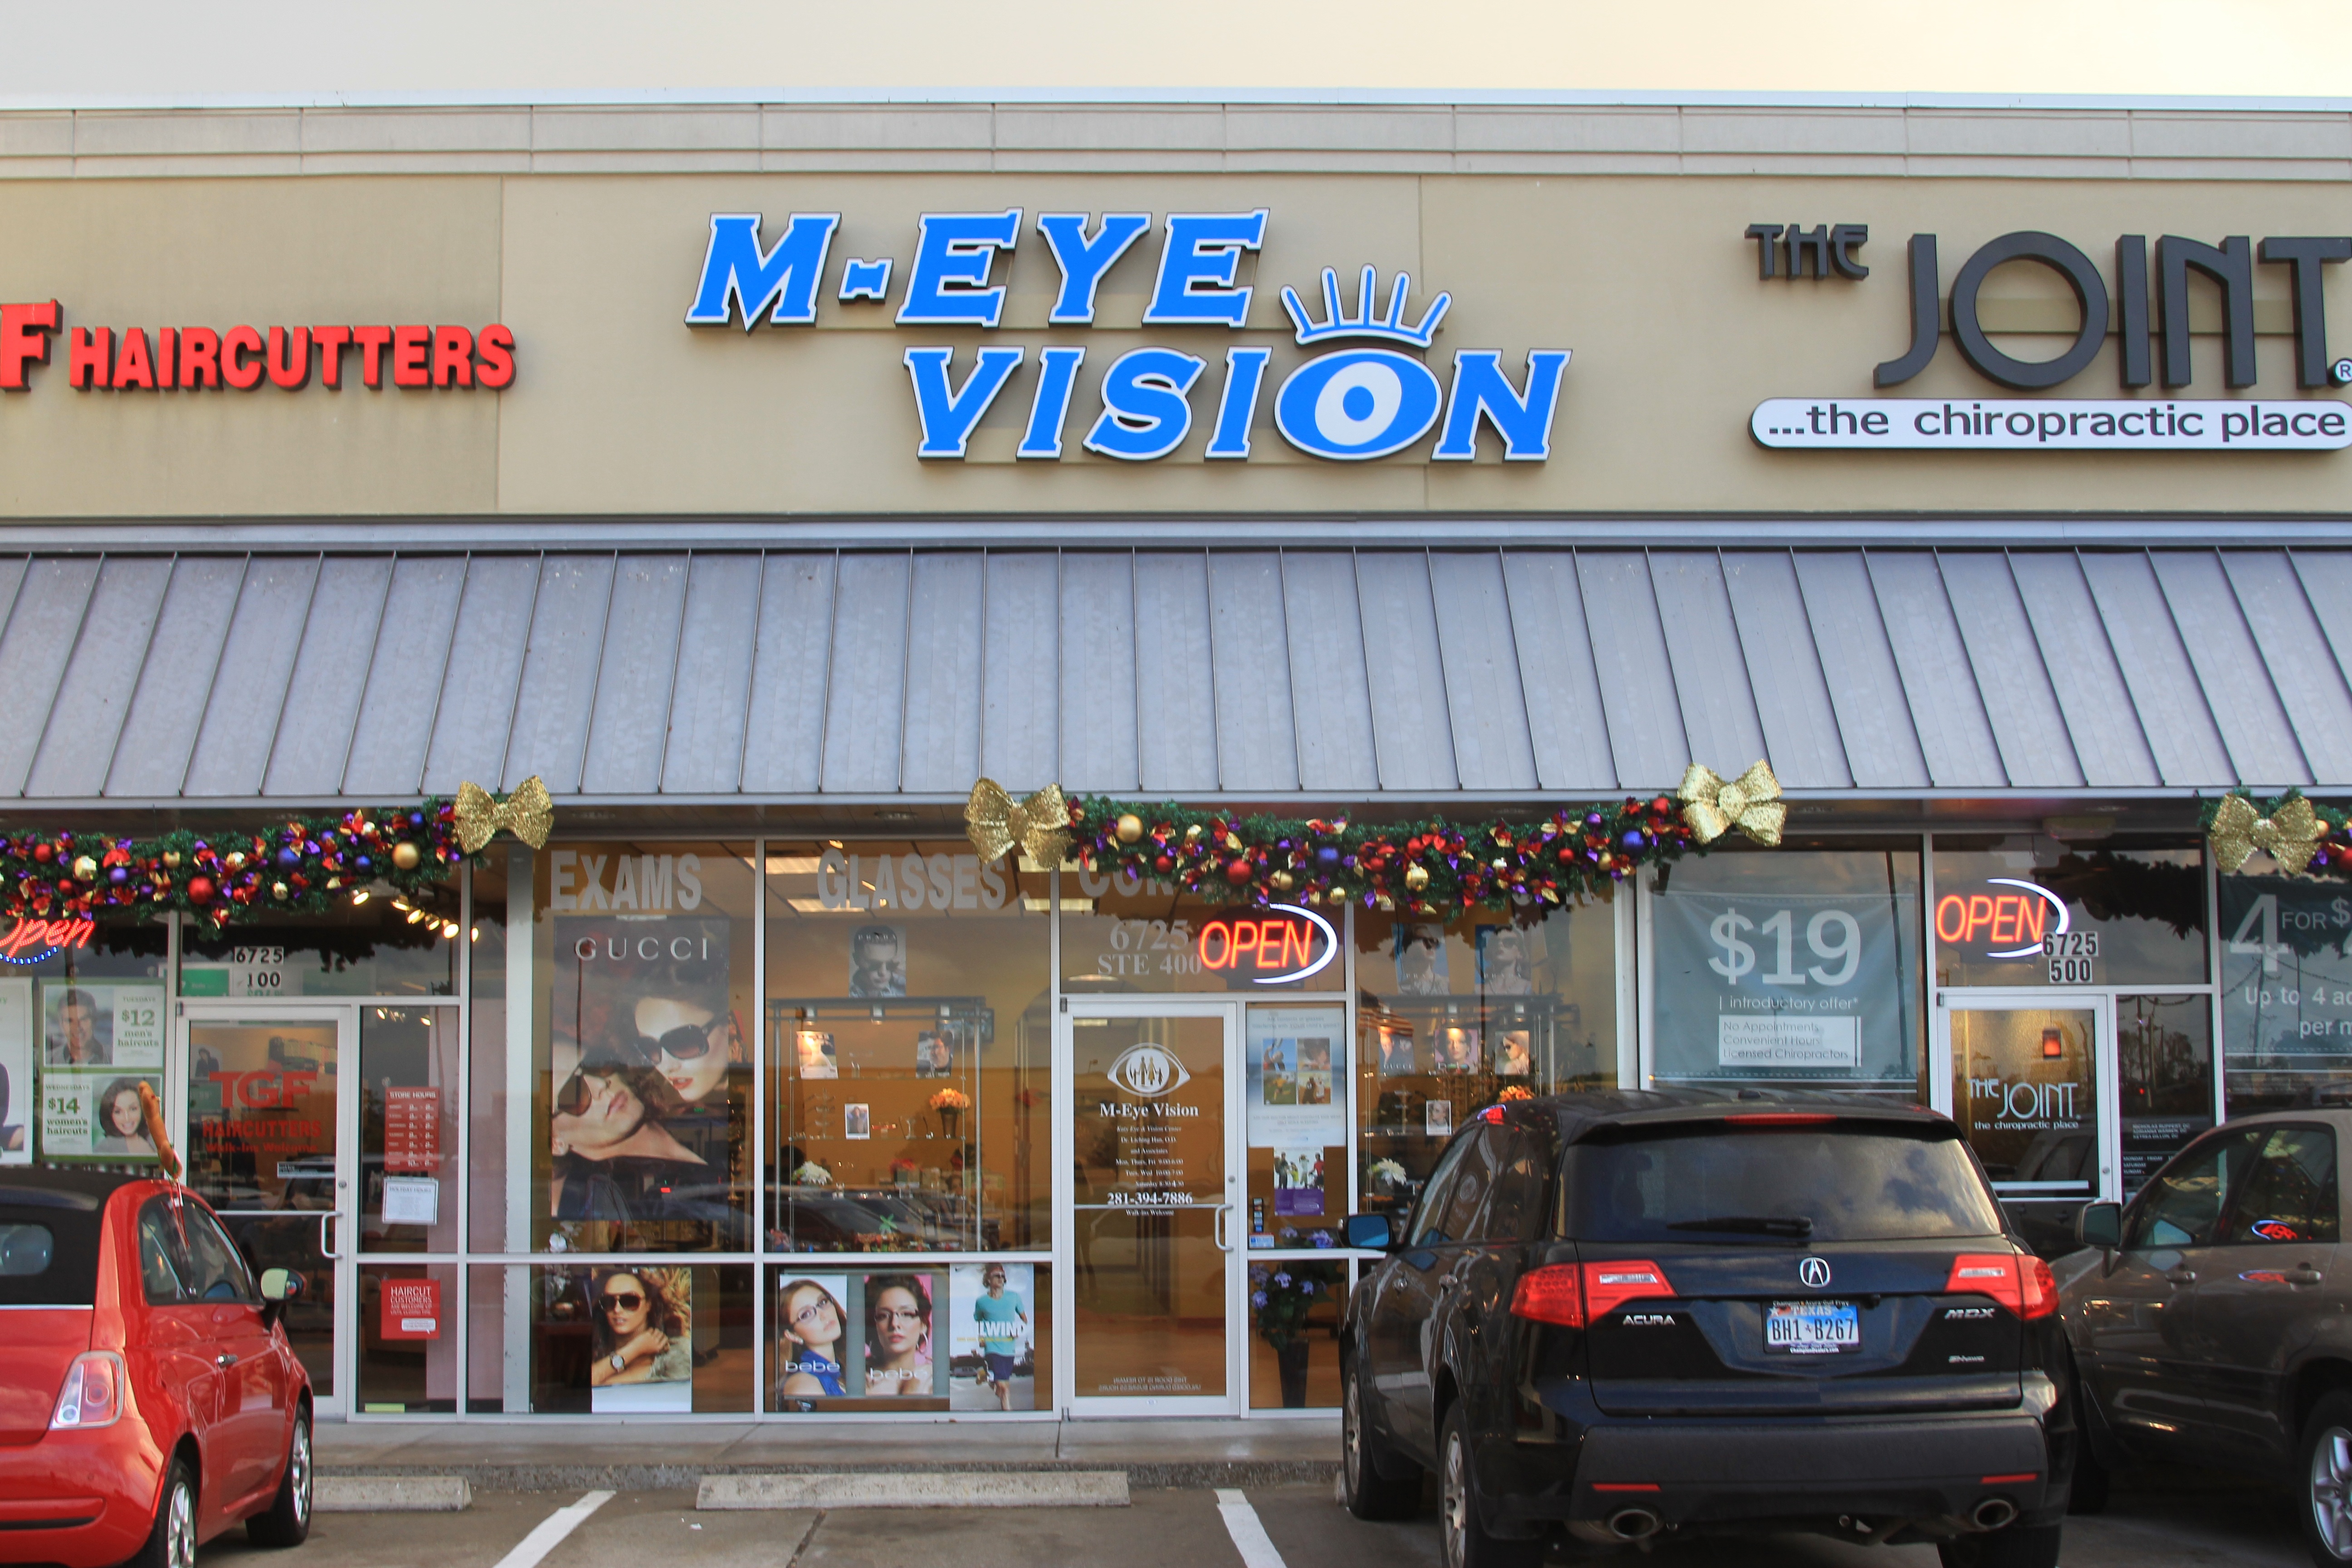 M-eye Vision